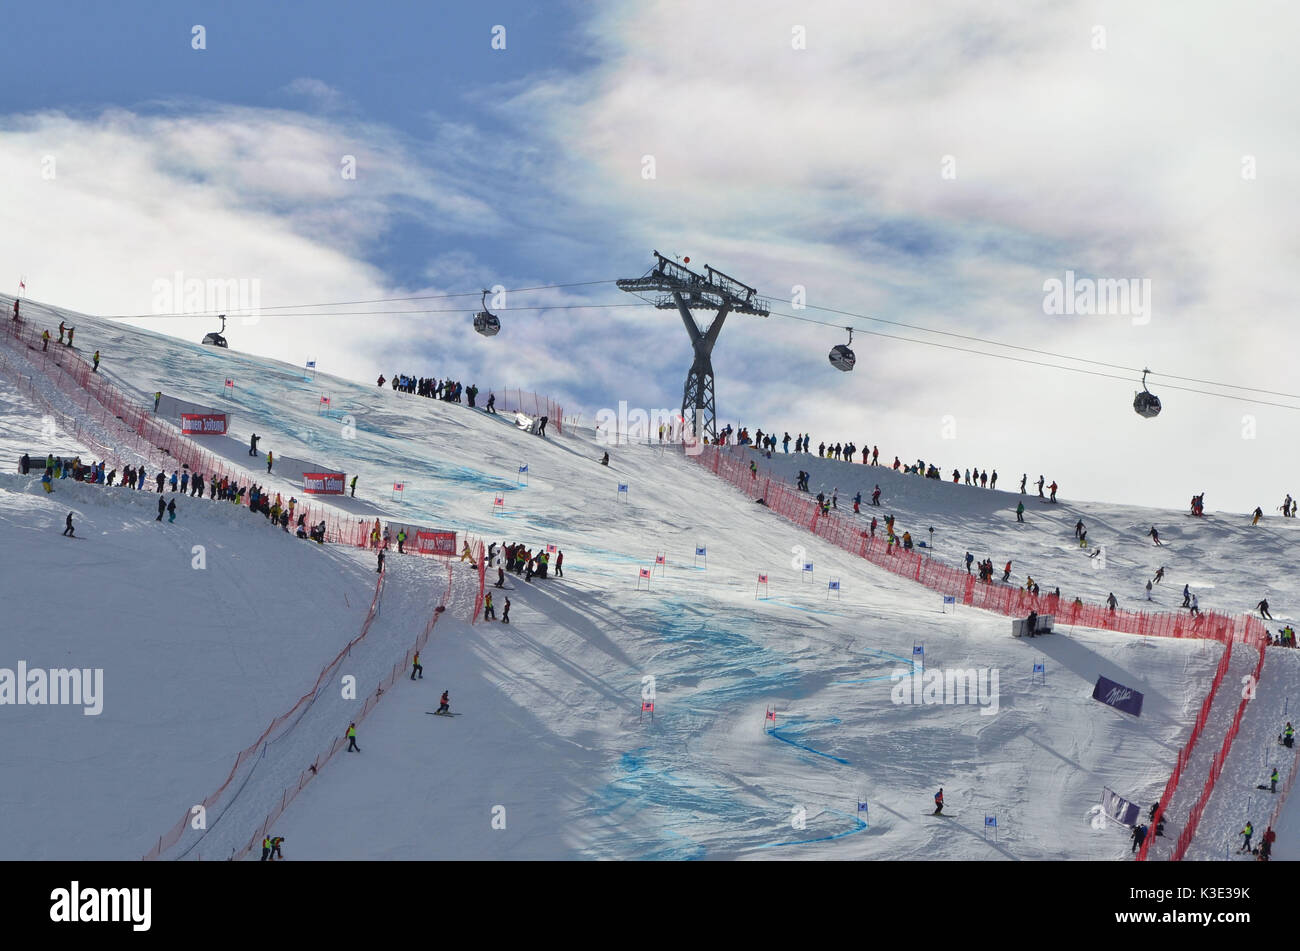 Skiing, ski race, ski world cup, ski slope, spectator Stock Photo